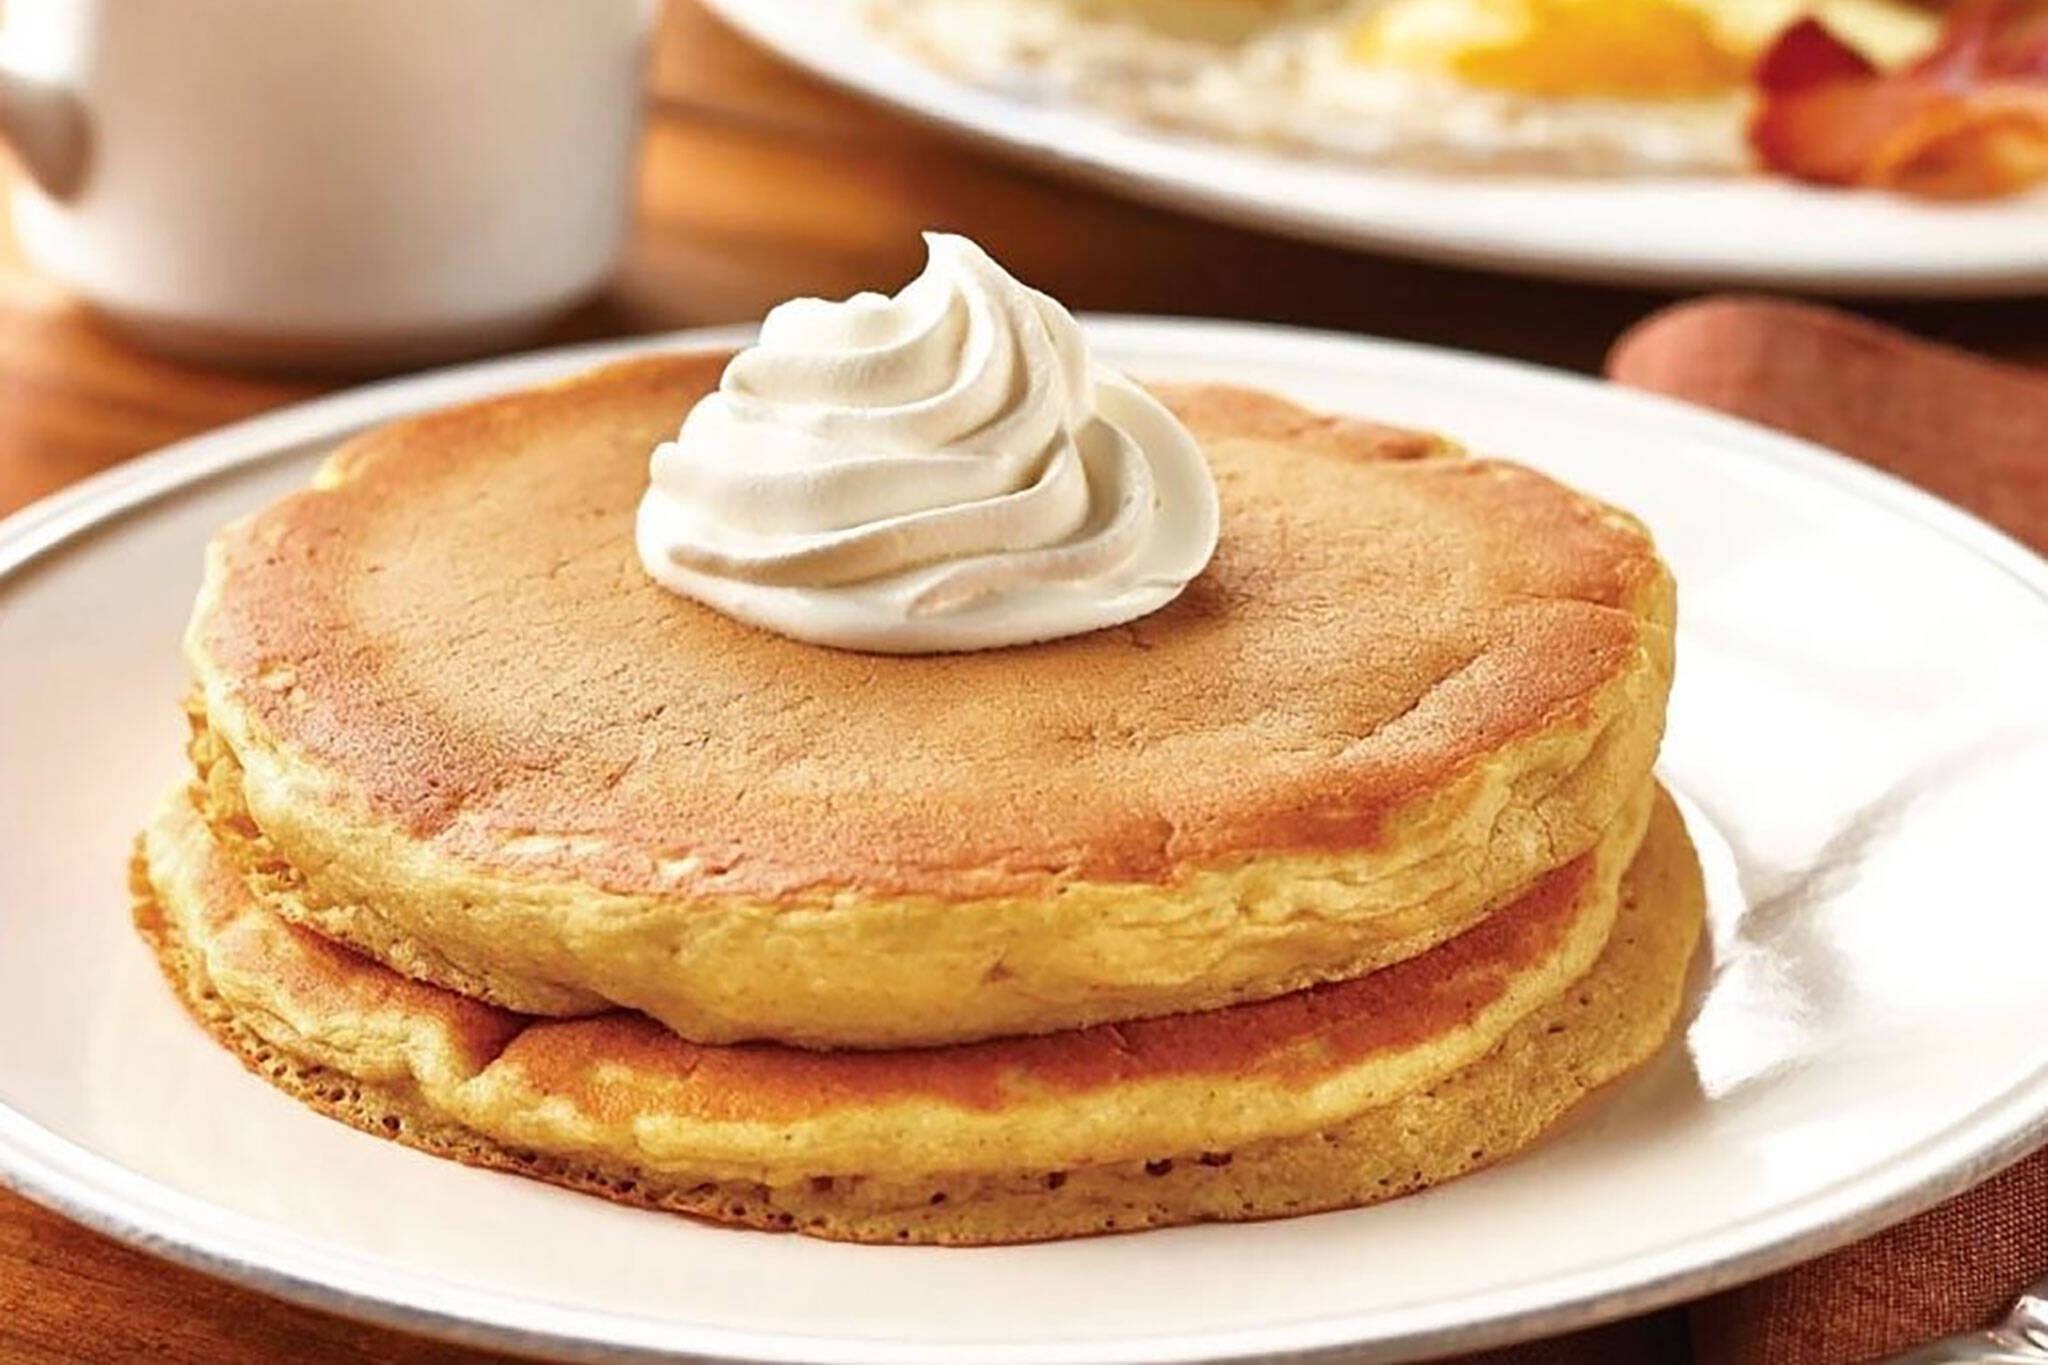 IHOP is giving away free pancakes in Ontario next week